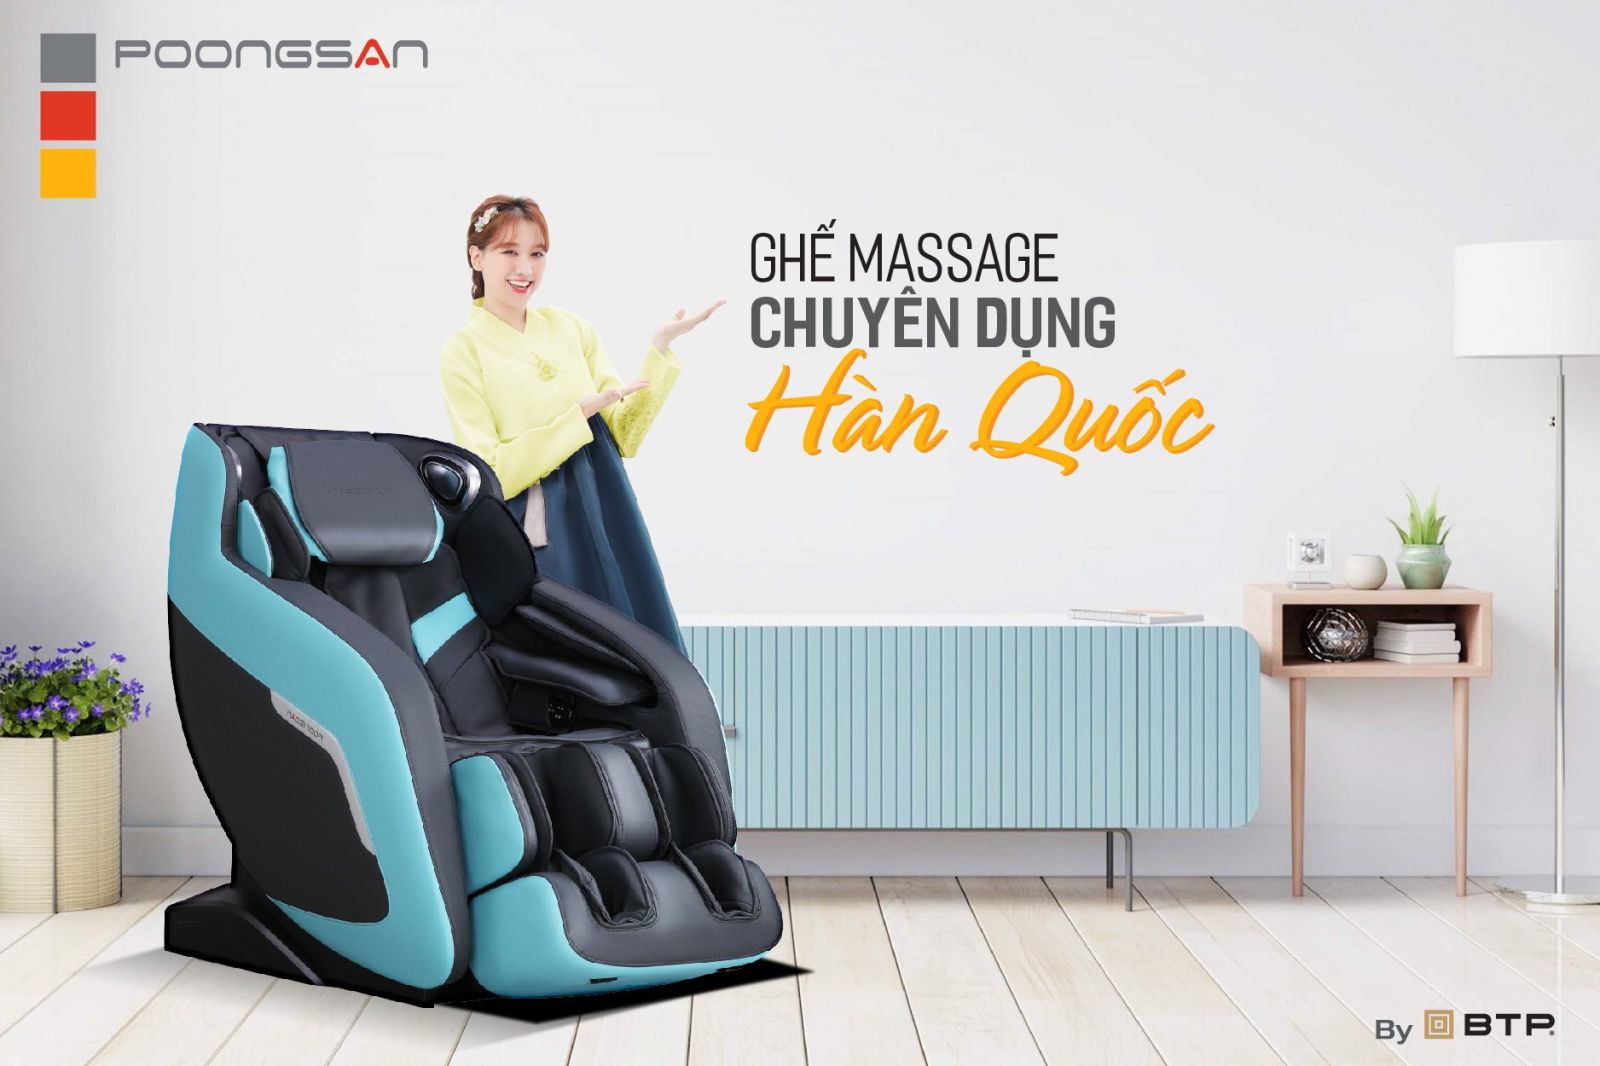 Poongsan - Ghế massage chuyên dụng Hàn Quốc hơn 20 năm tại Việt Nam